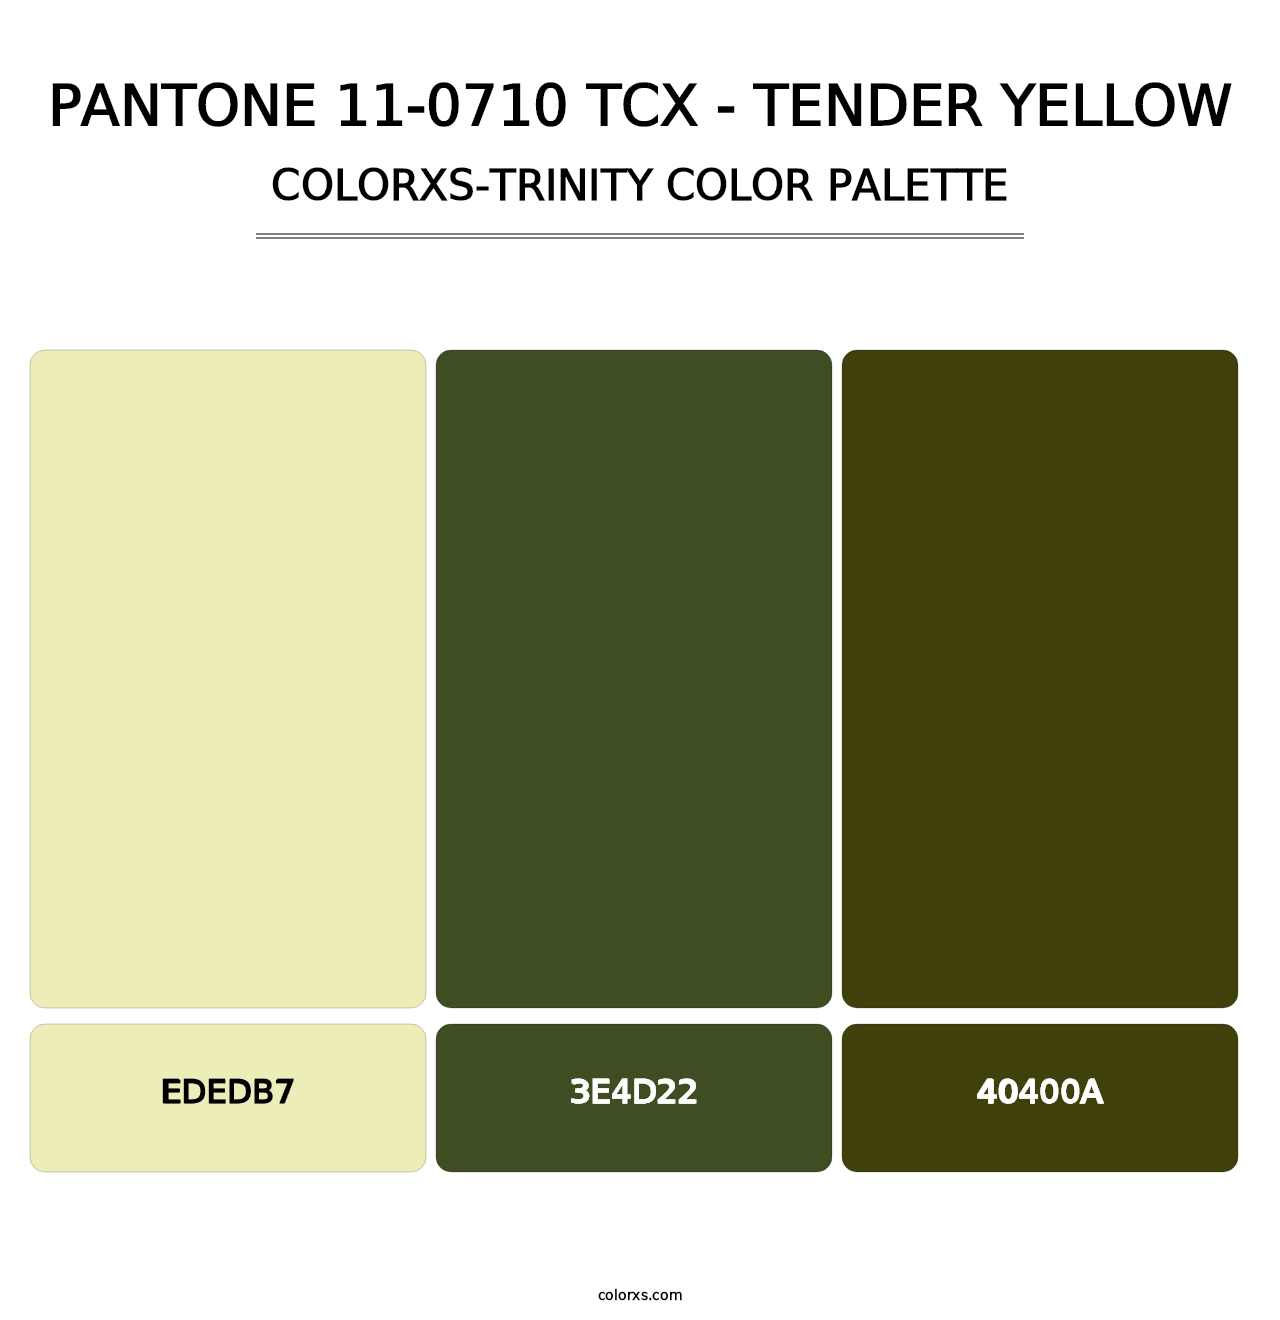 PANTONE 11-0710 TCX - Tender Yellow - Colorxs Trinity Palette